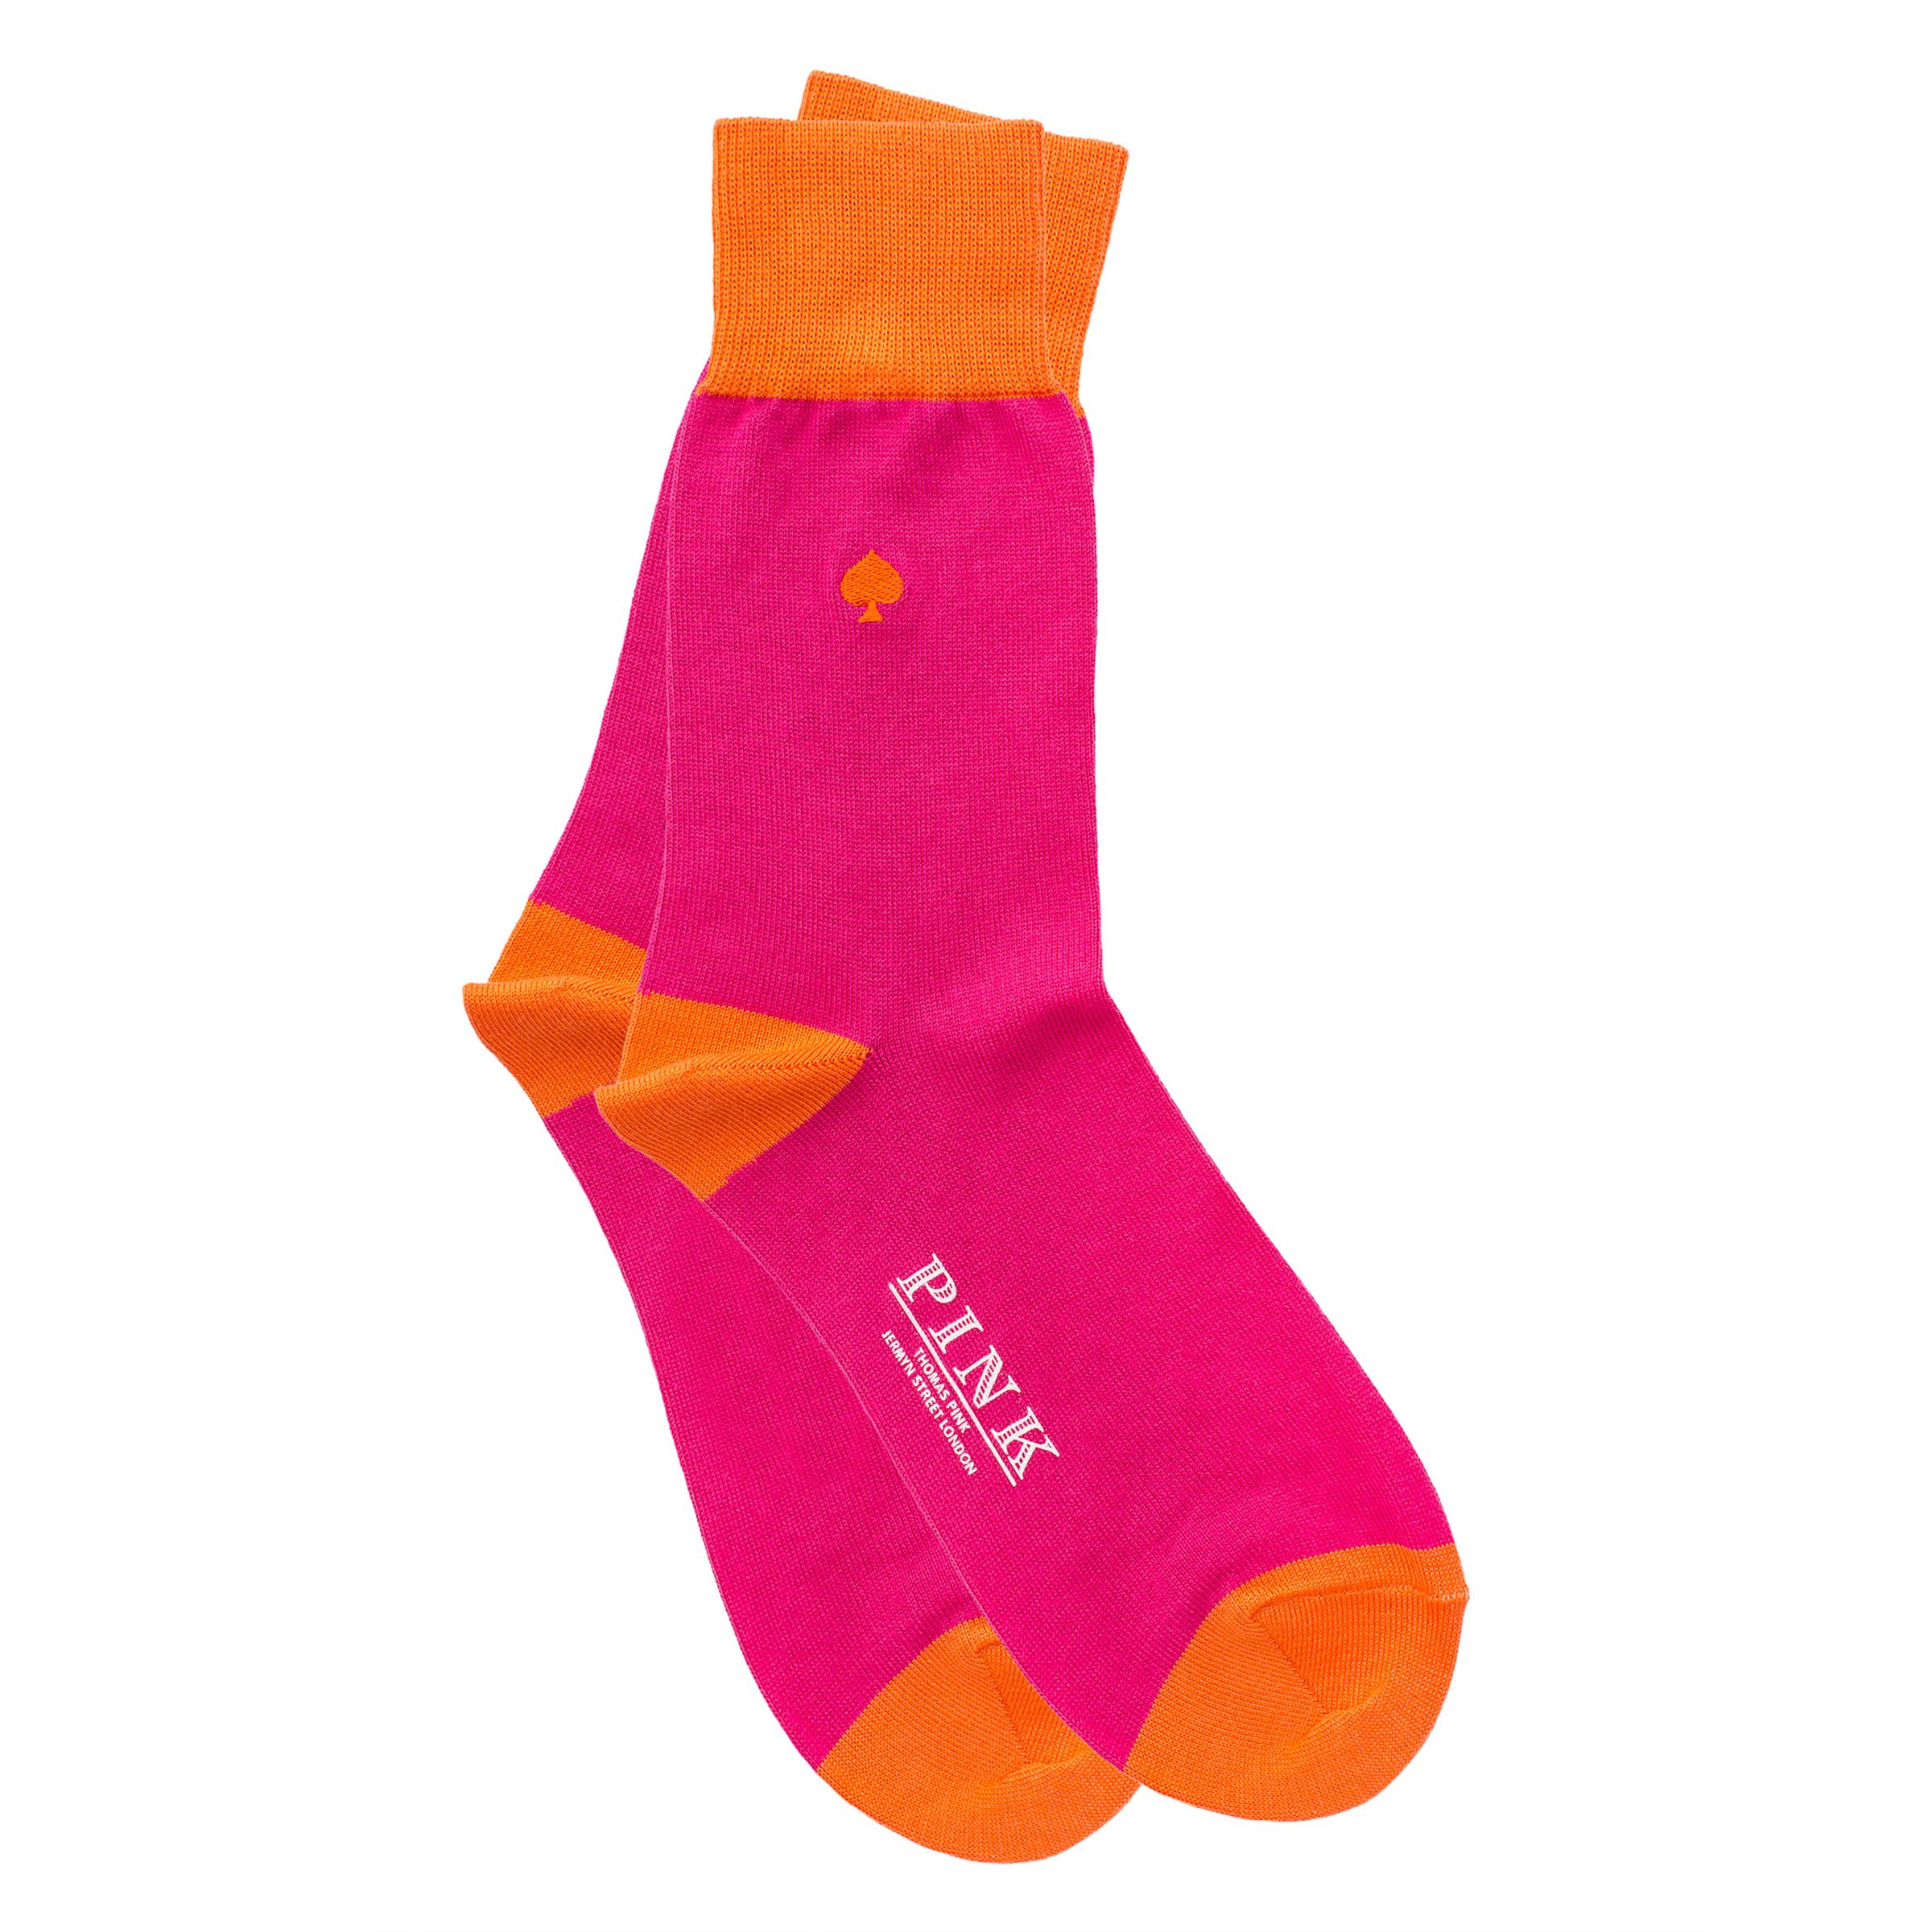 Thomas Pink Card Suit Socks, Pink/Orange, S/M